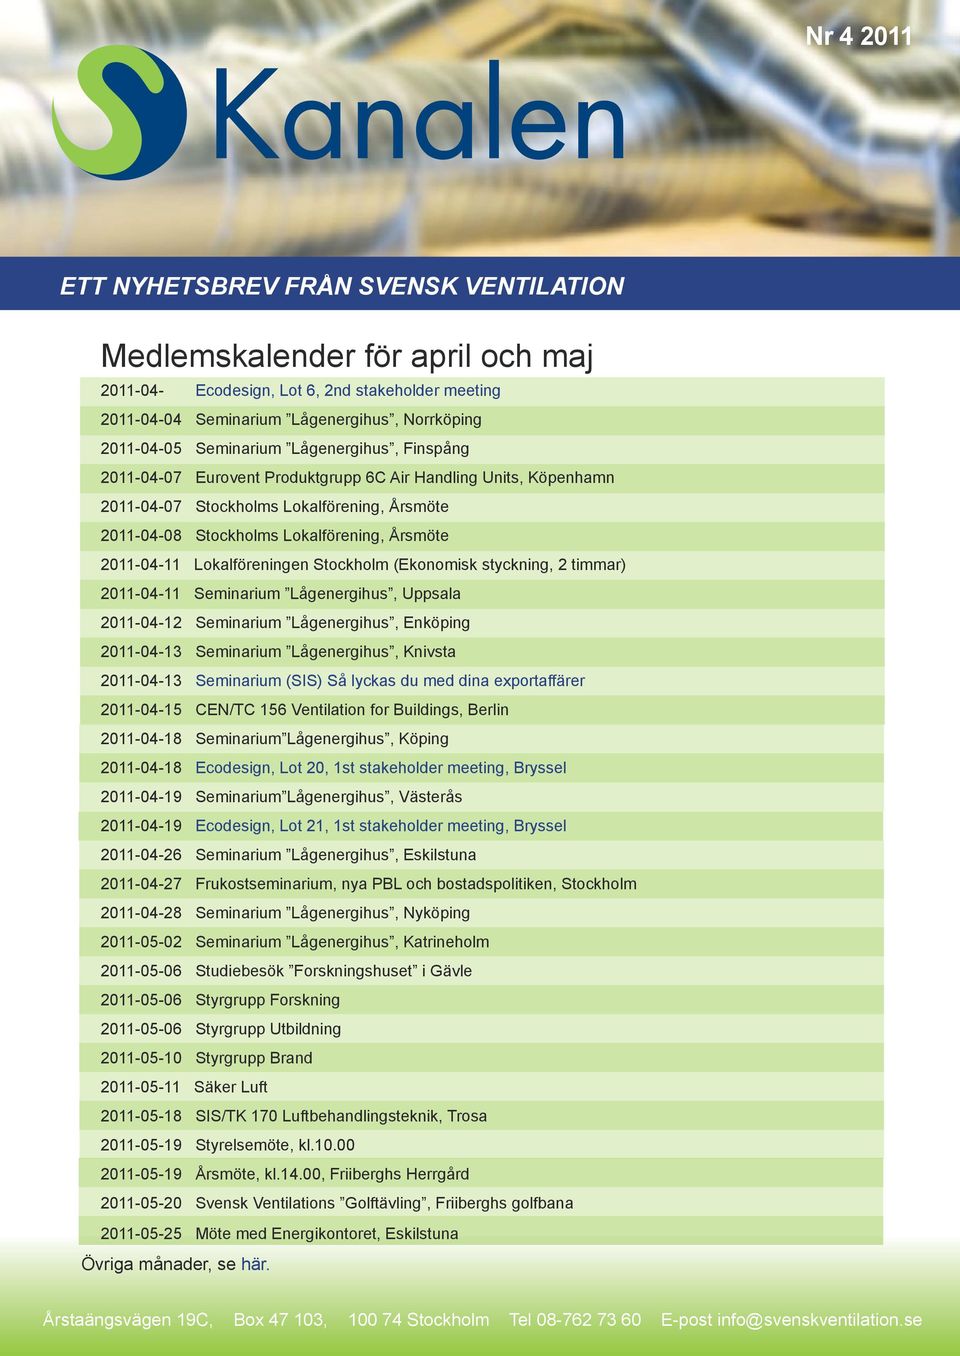 timmar) 2011-04-11 Seminarium Lågenergihus, Uppsala 2011-04-12 Seminarium Lågenergihus, Enköping 2011-04-13 Seminarium Lågenergihus, Knivsta 2011-04-13 Seminarium (SIS) Så lyckas du med dina